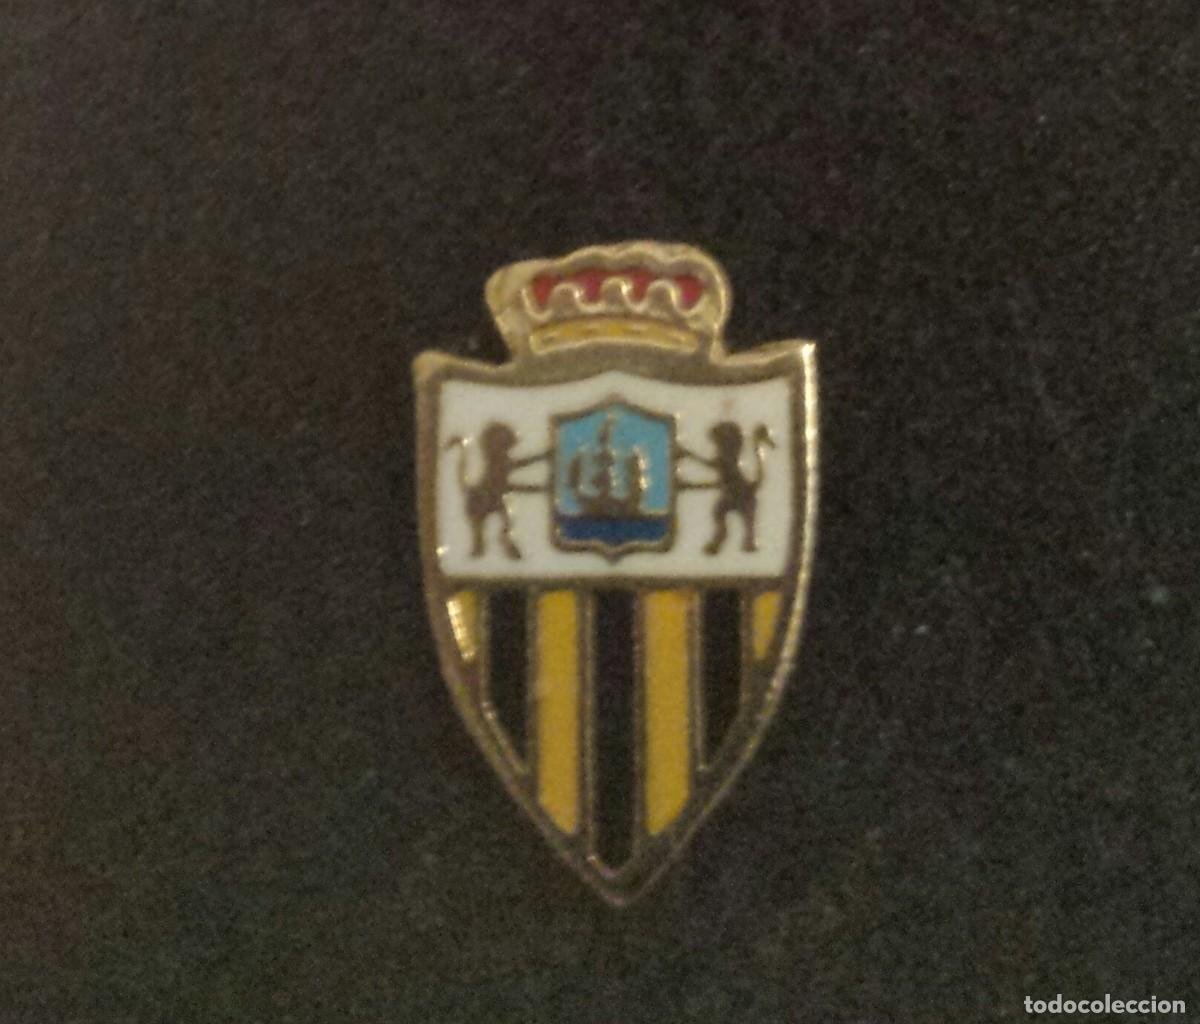 URUGUAY. - Pins de escudos/insiginas de equipos de fútbol.